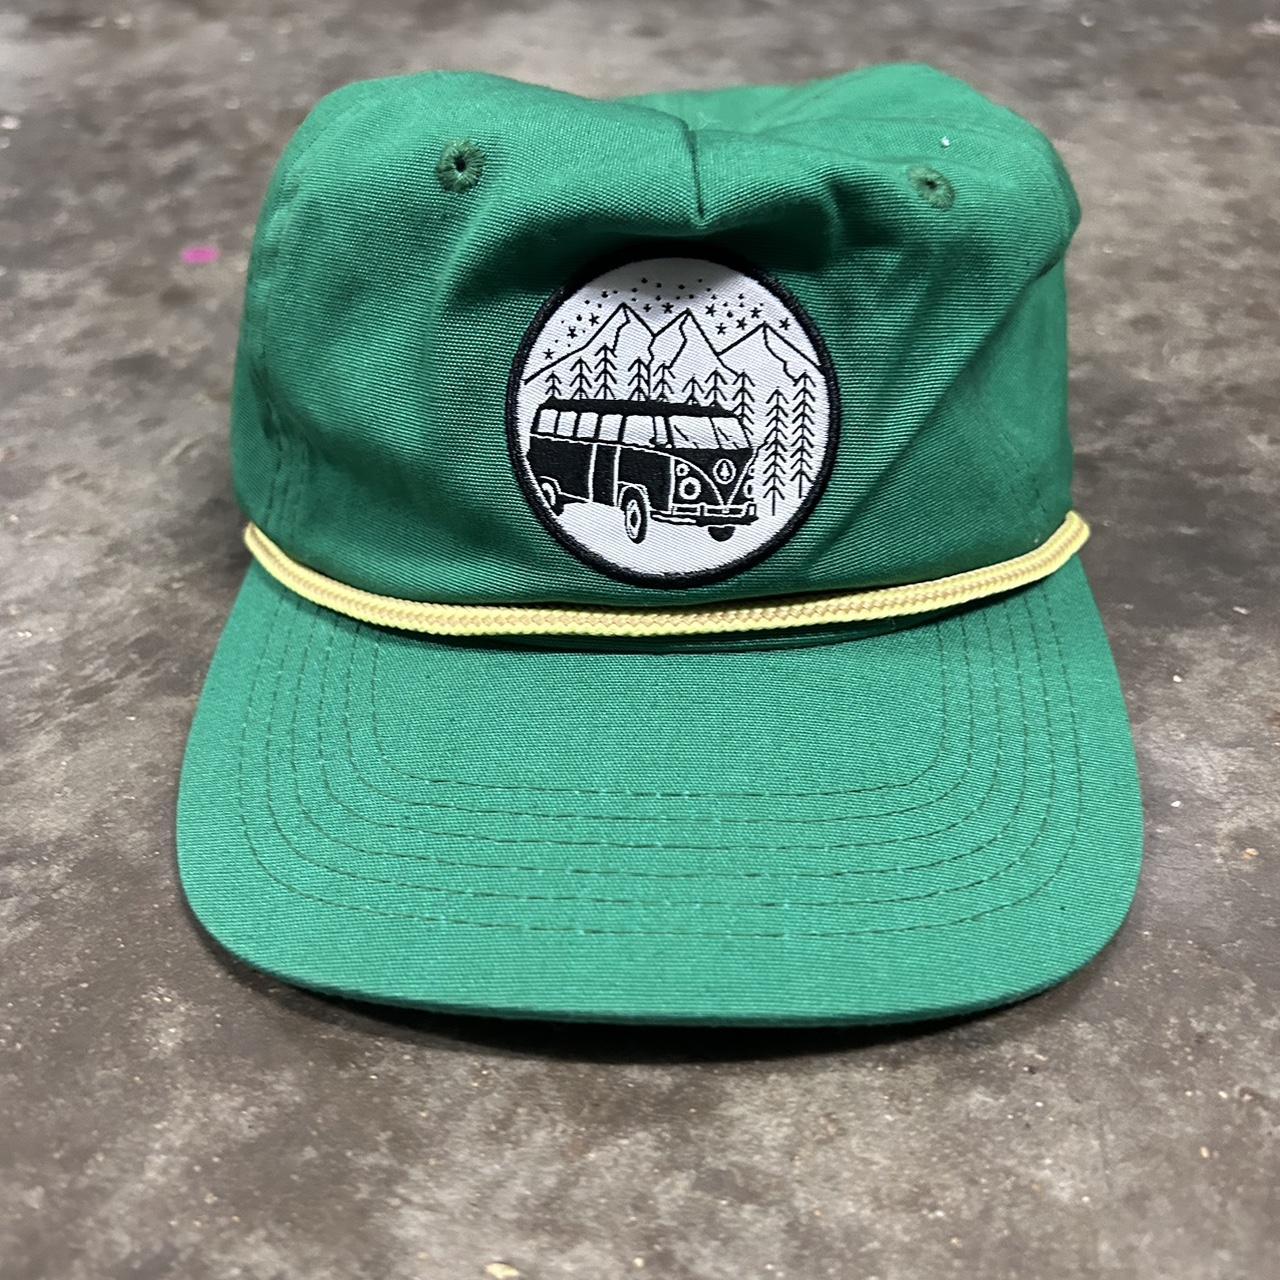 Green Camper hat #vintage #camper #granola... - Depop